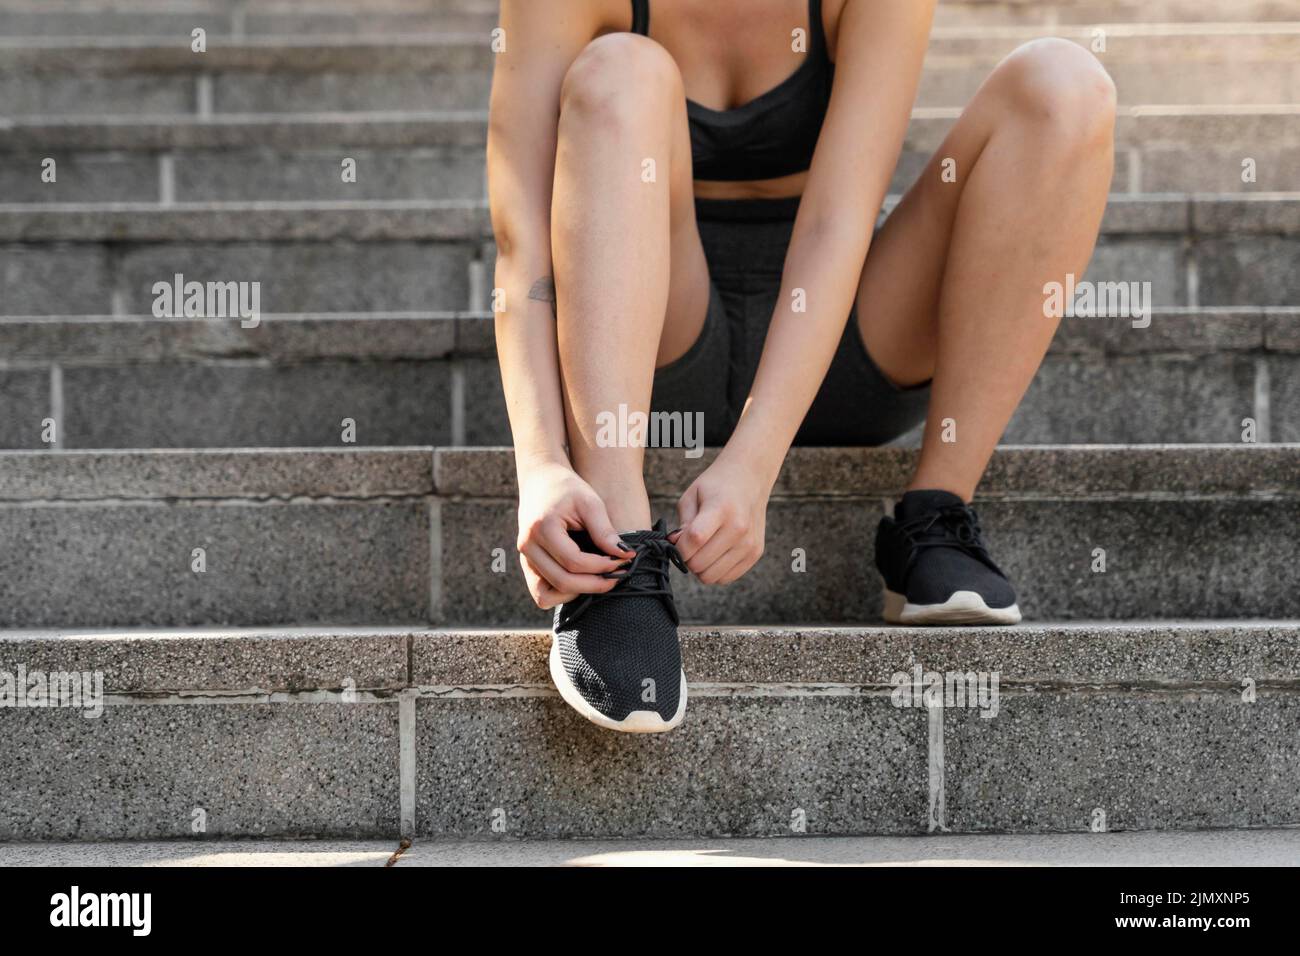 Vorderansicht Frau schnürt ihre Schnürsenkel vor dem Training Stockfoto